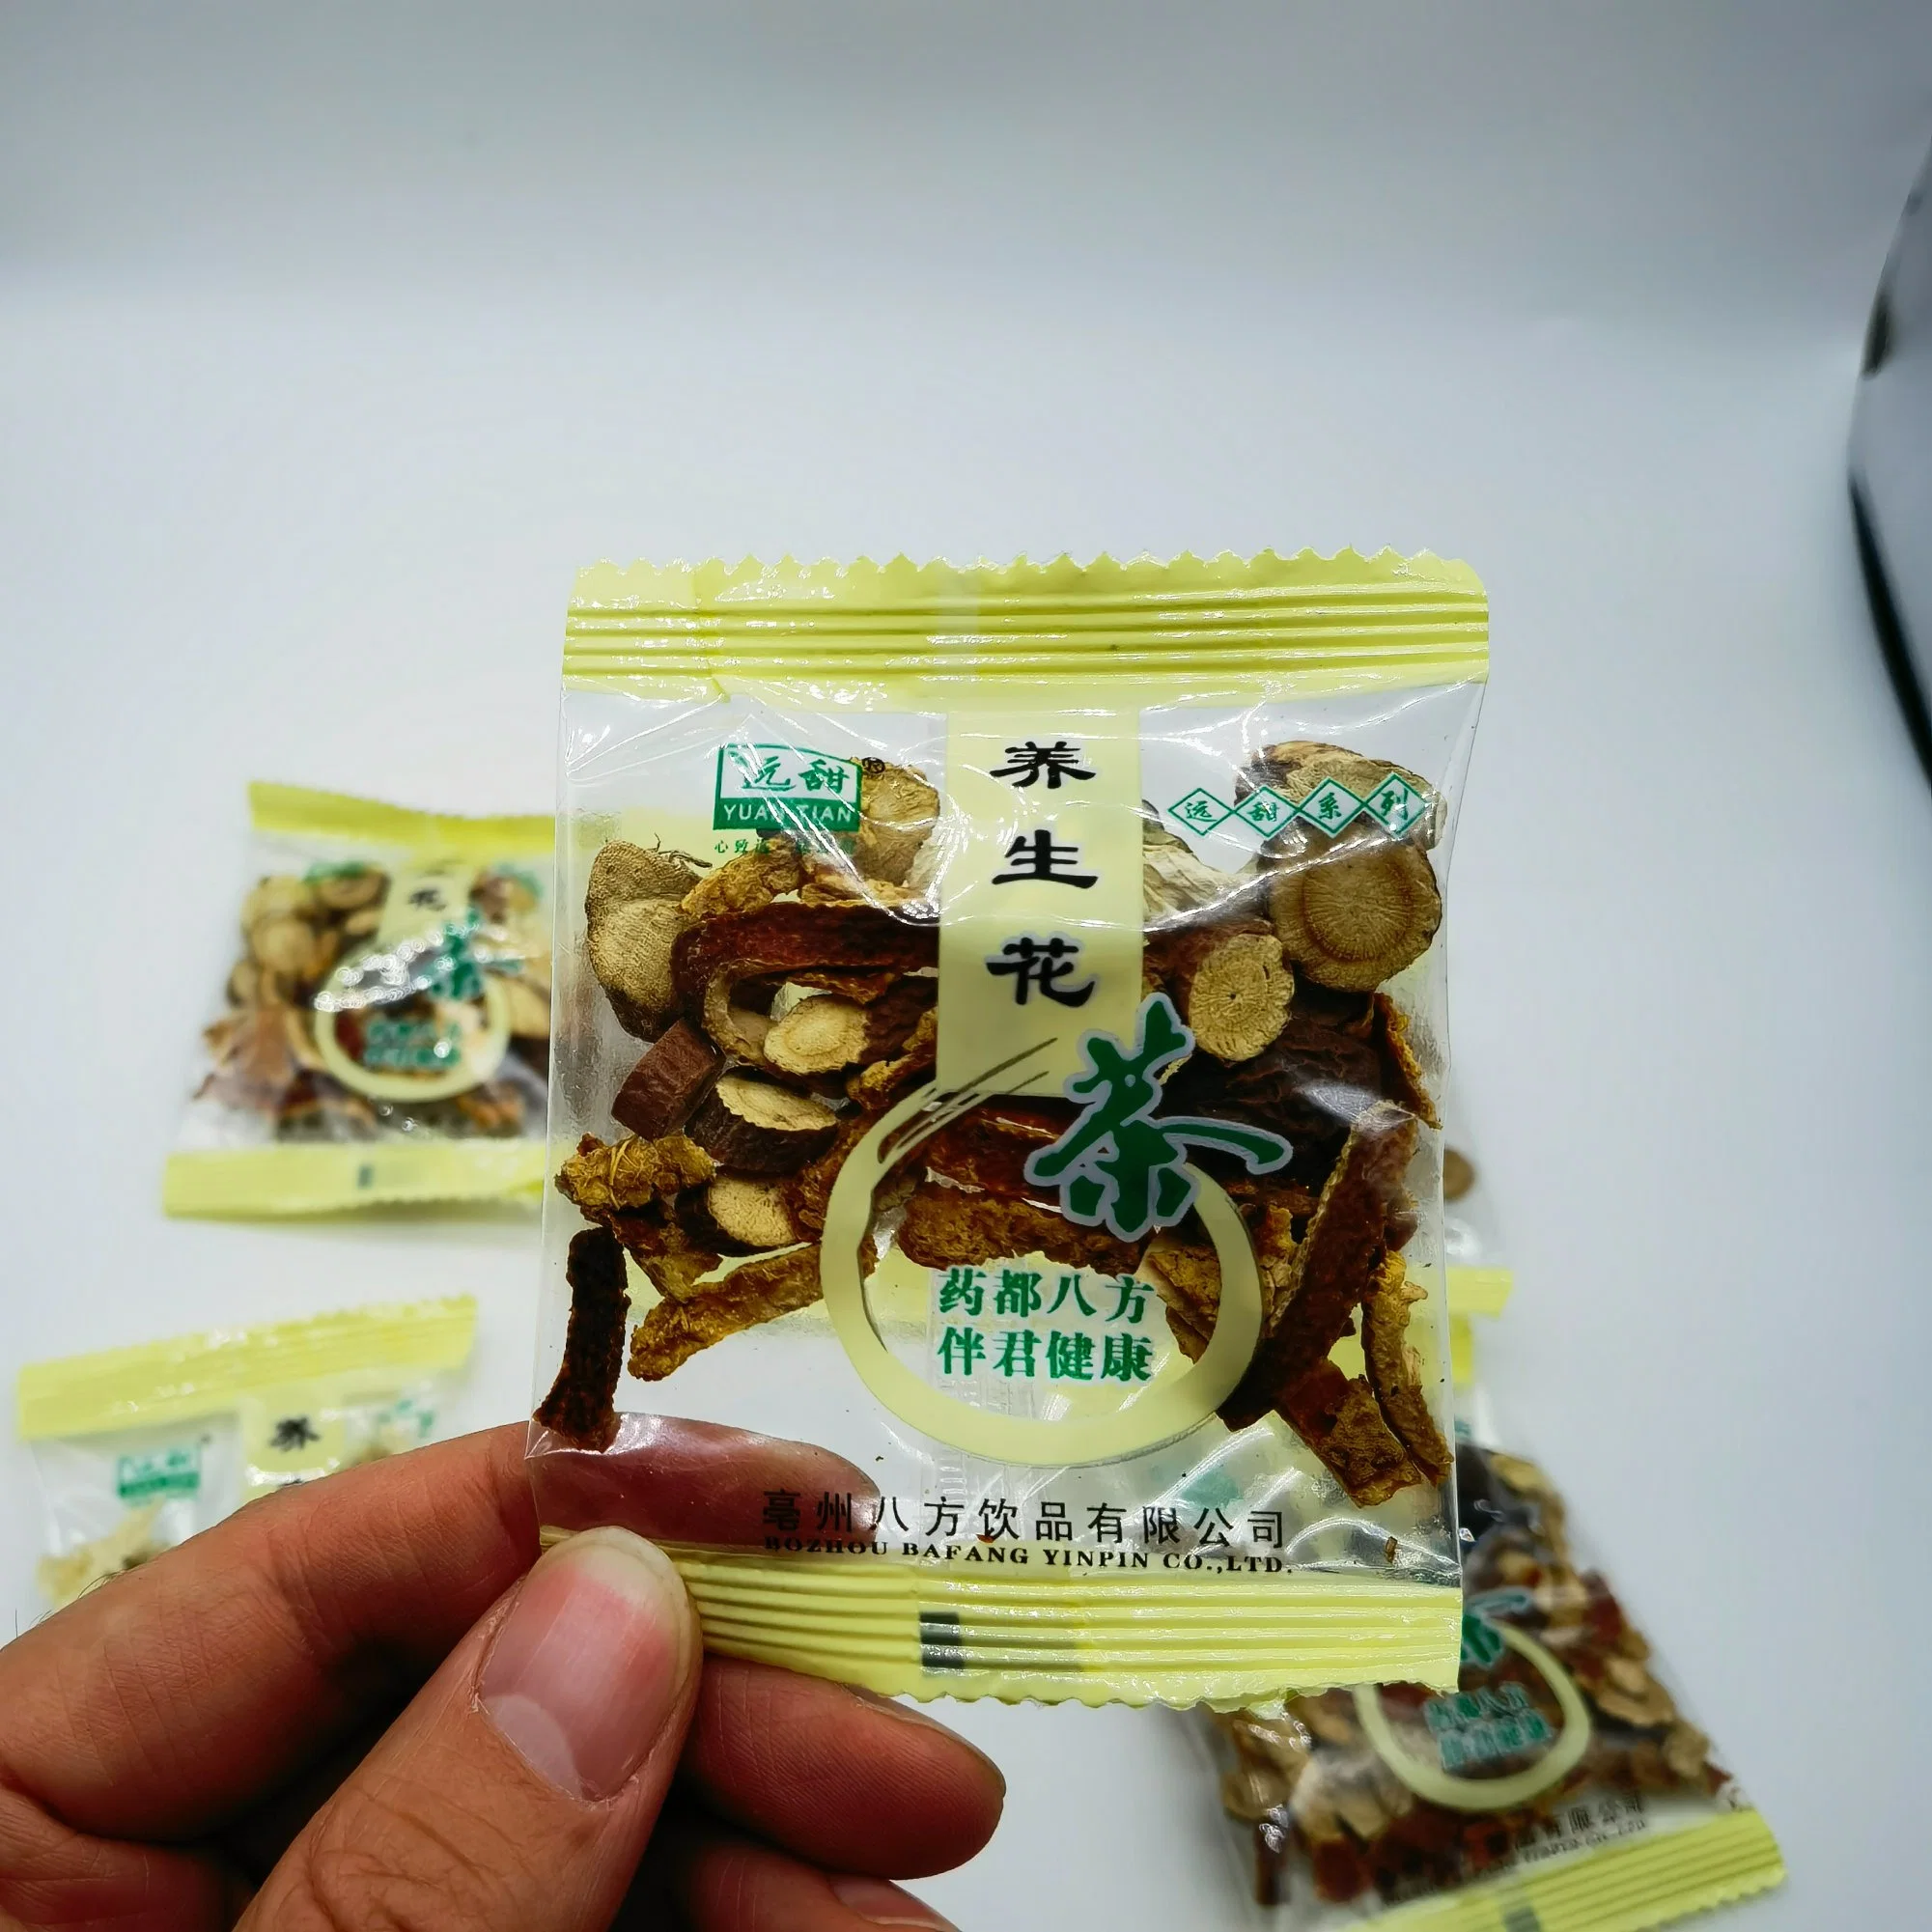 باقة هدايا يانغ شنغ تشا شاي بالأعشاب الصينية المختلط حقيبة للصحة